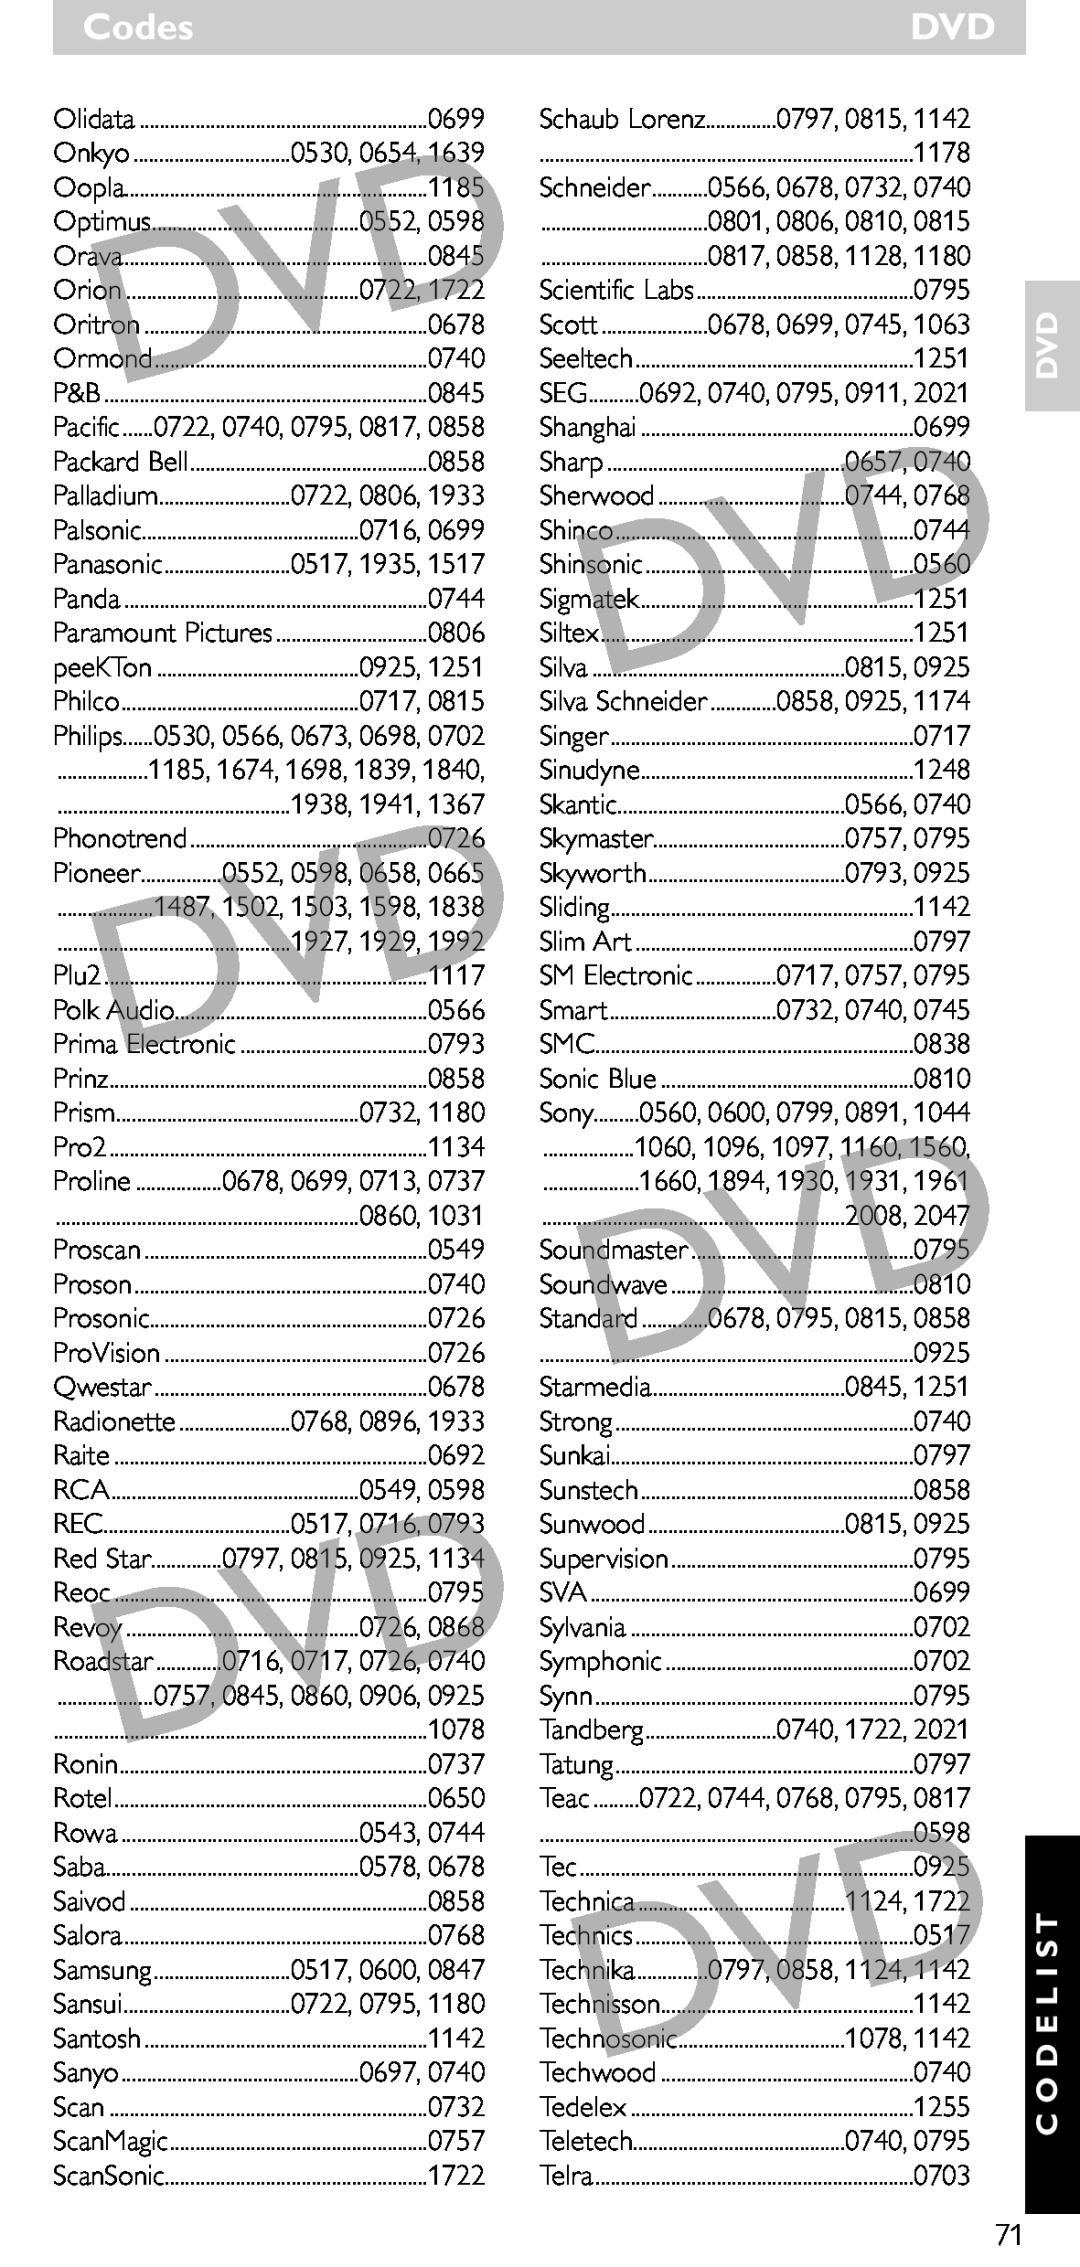 Philips SRU 5020/86 manual Codes, Dvd C O D E L I S T, 0530, 0654 